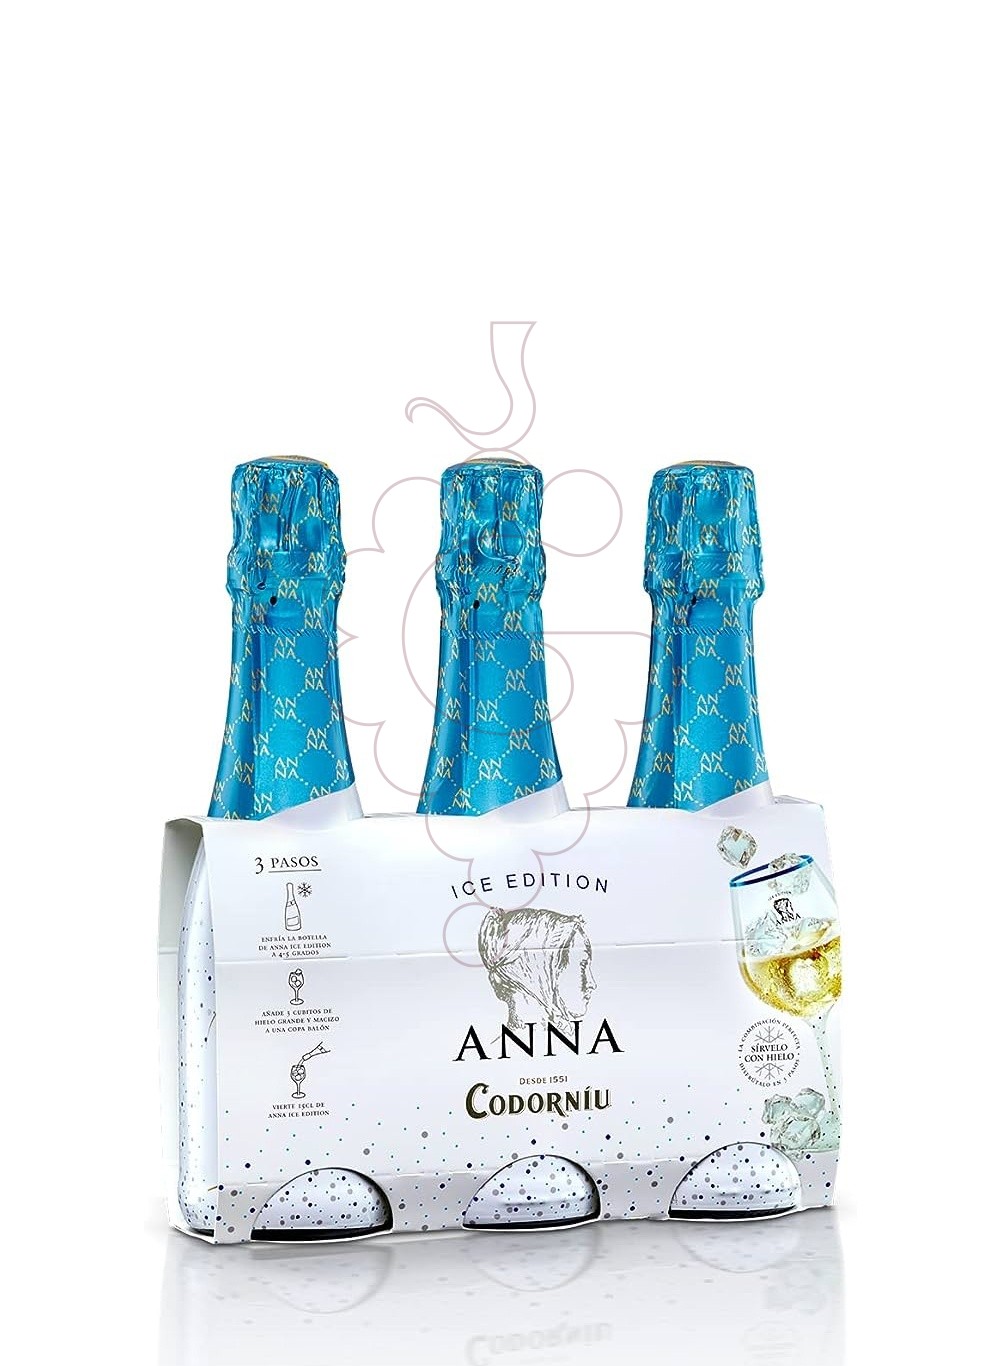 Photo Anna de codorniu ice botellin sparkling wine